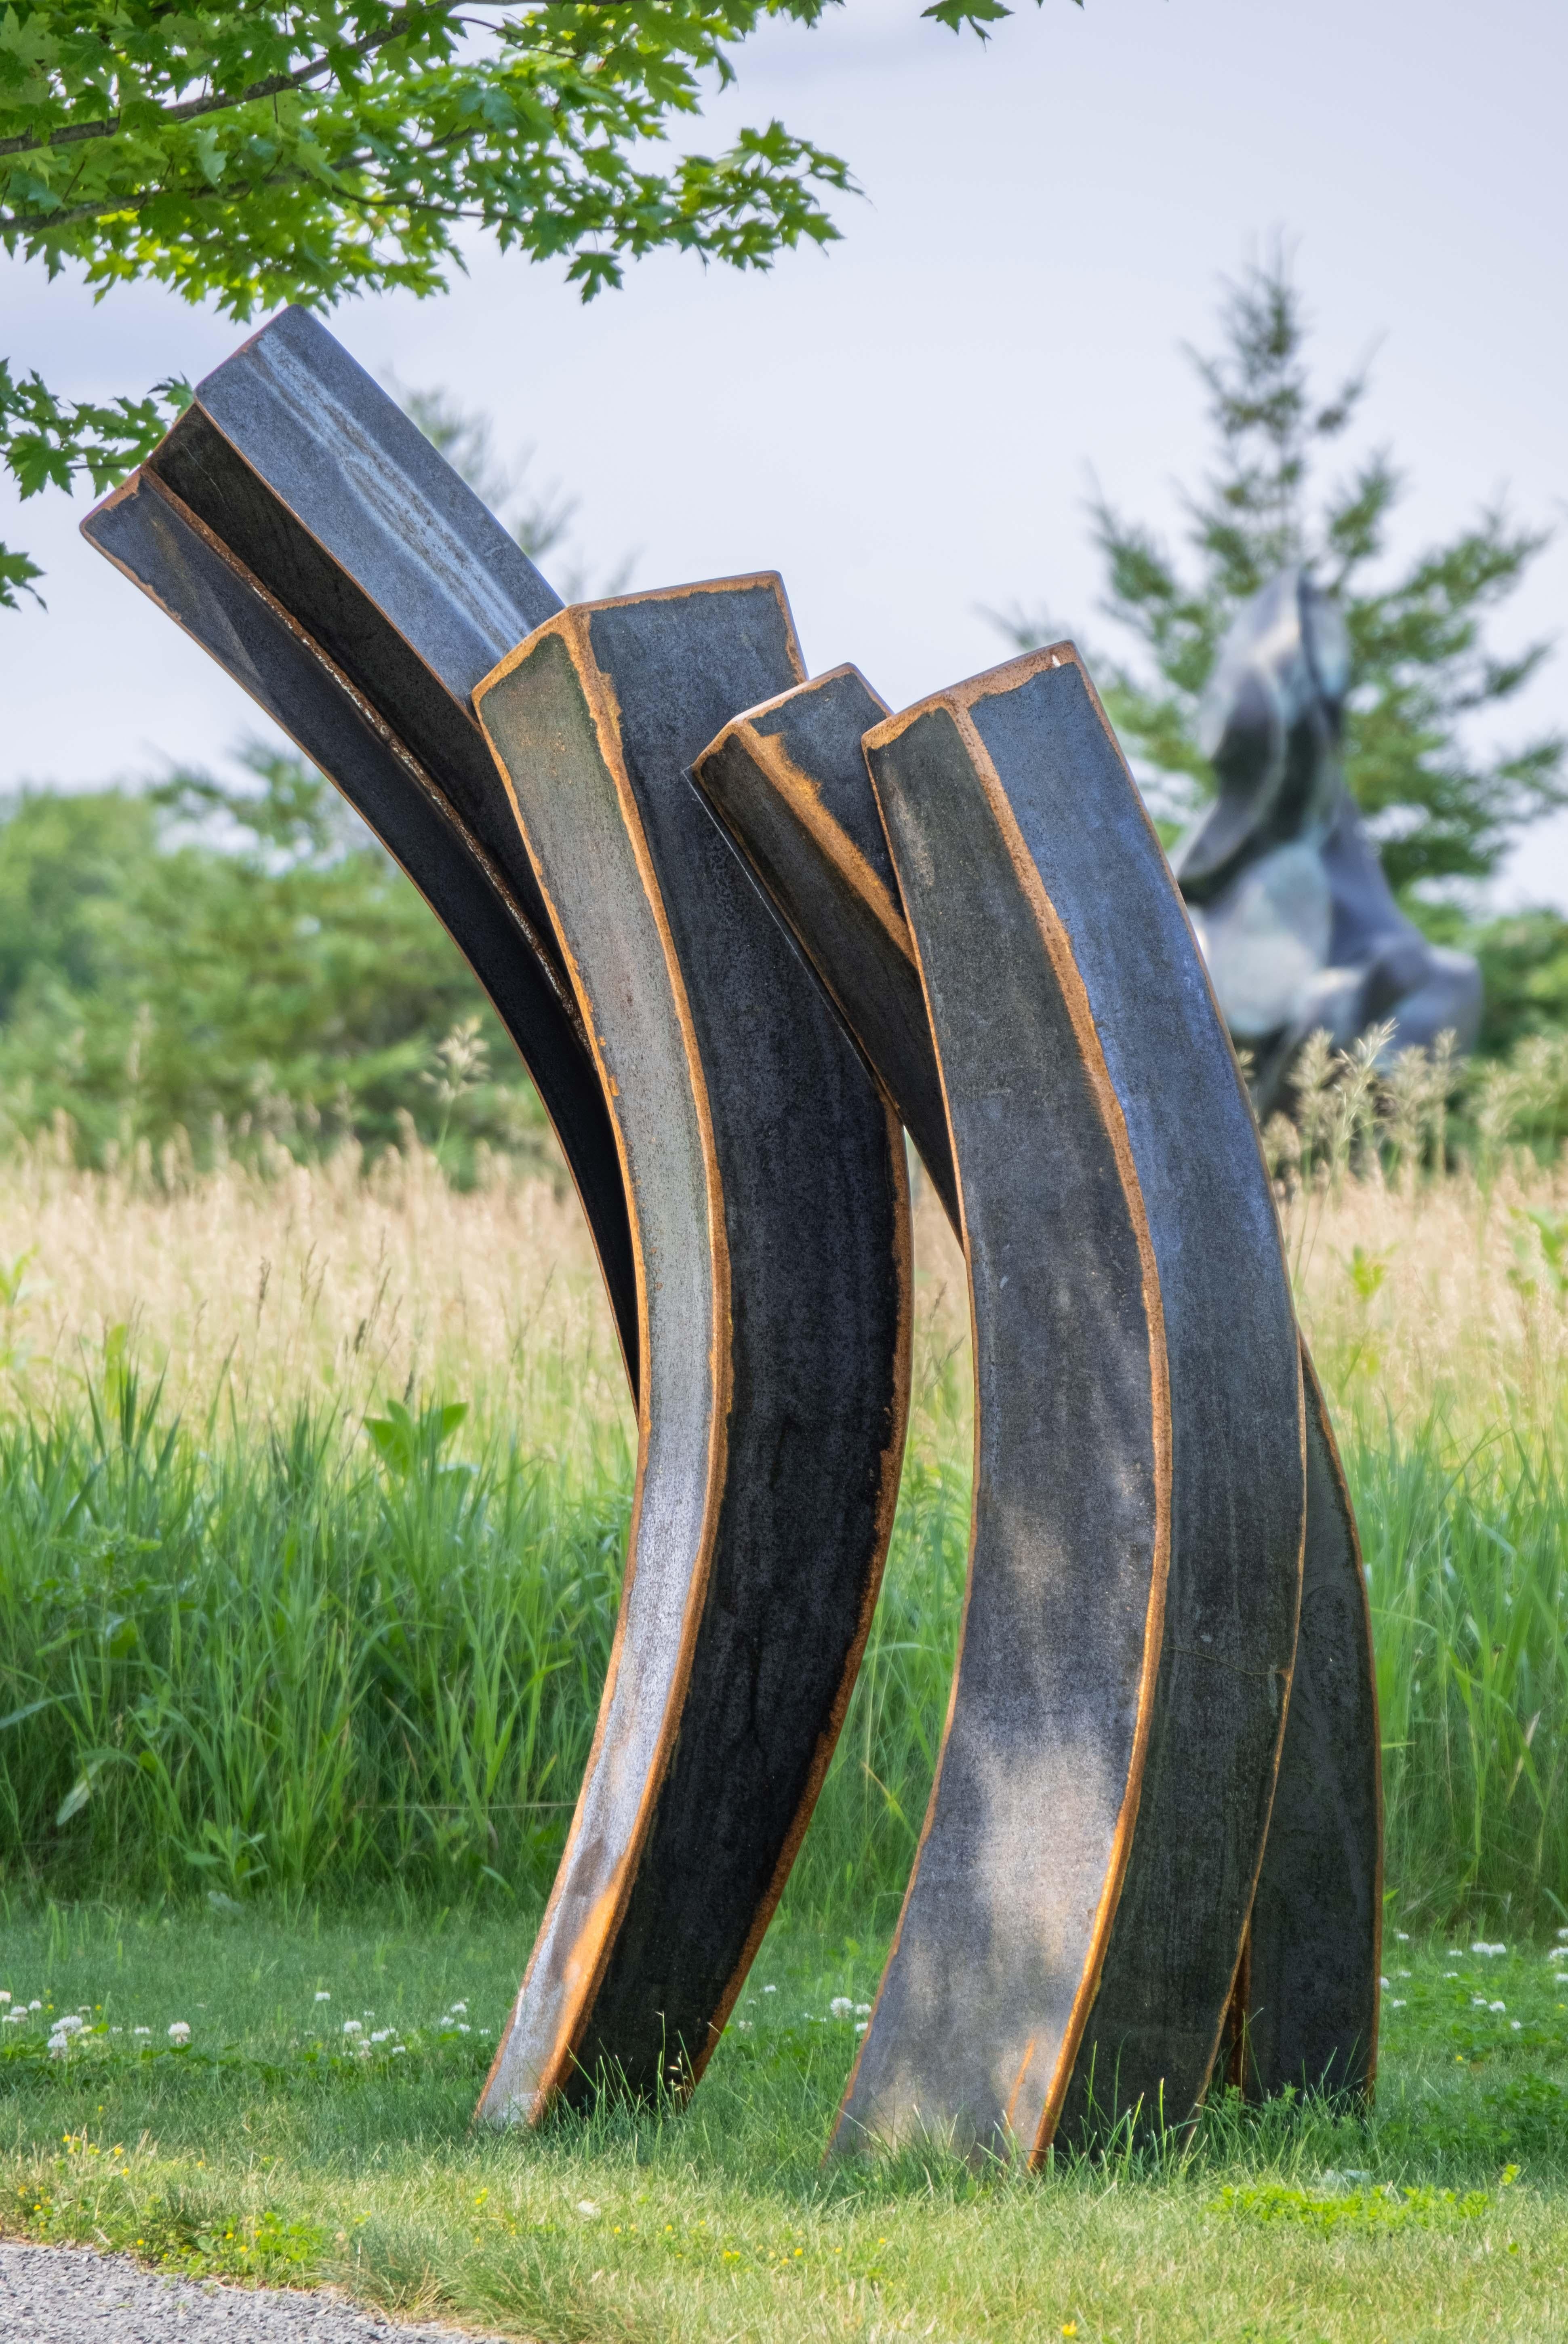 Corpheum XVIII - large, geometric, abstract, corten steel outdoor sculpture - Sculpture by Claude Millette